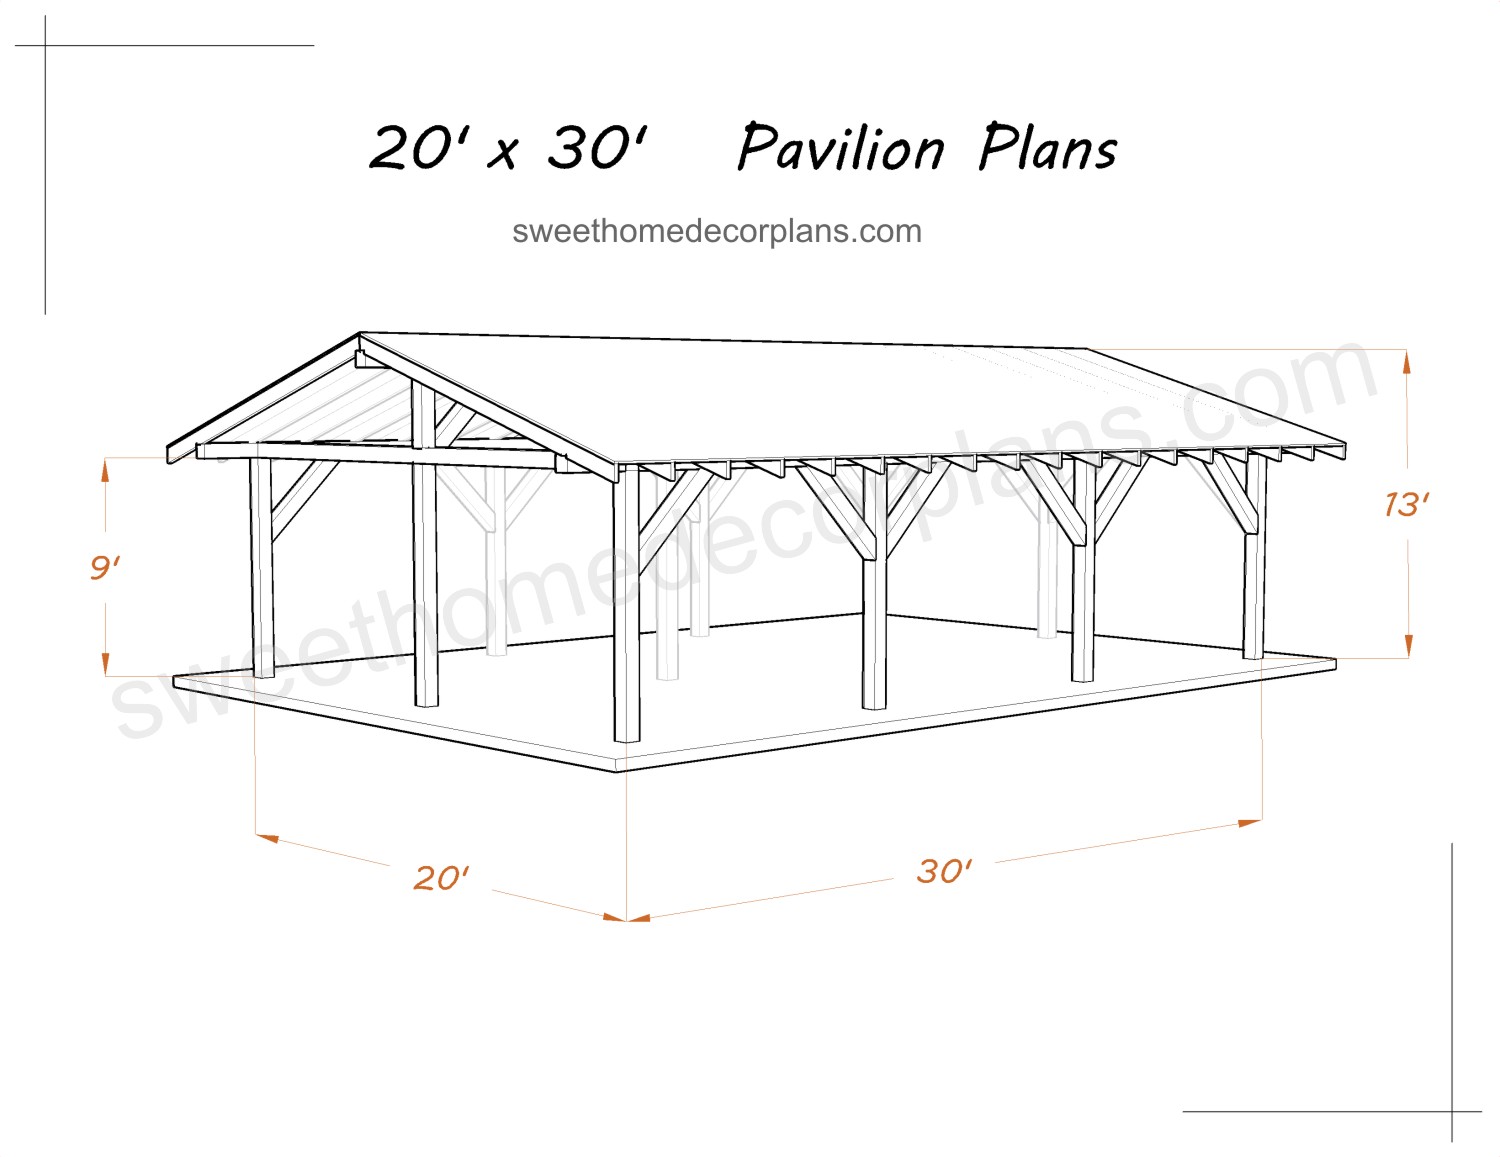 diy-wooden-20-х-30-gable-pavilion-plans-in-pdf